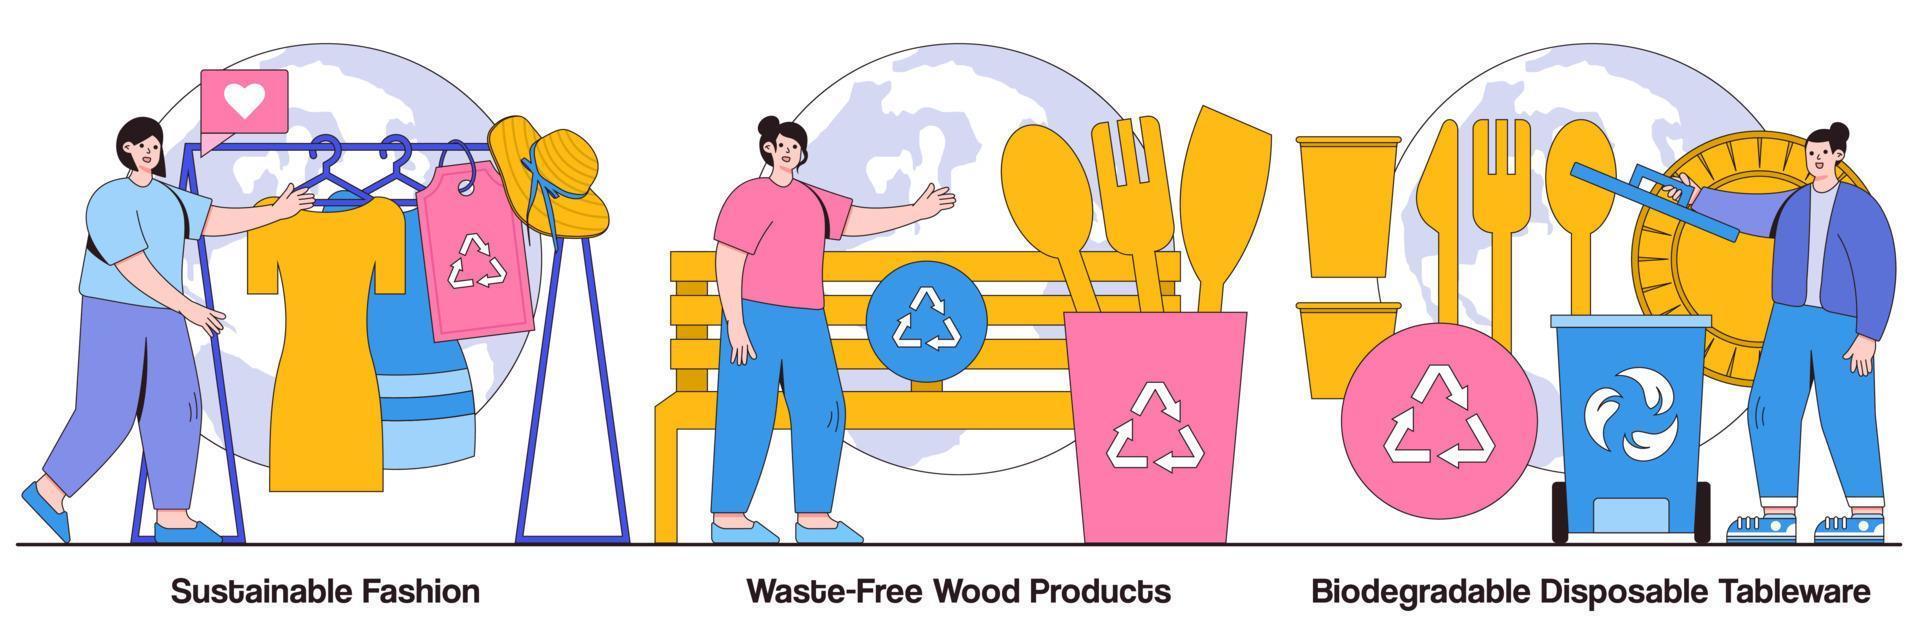 duurzame mode, afvalvrije houtproducten en biologisch afbreekbaar wegwerpservies geïllustreerd pakket vector